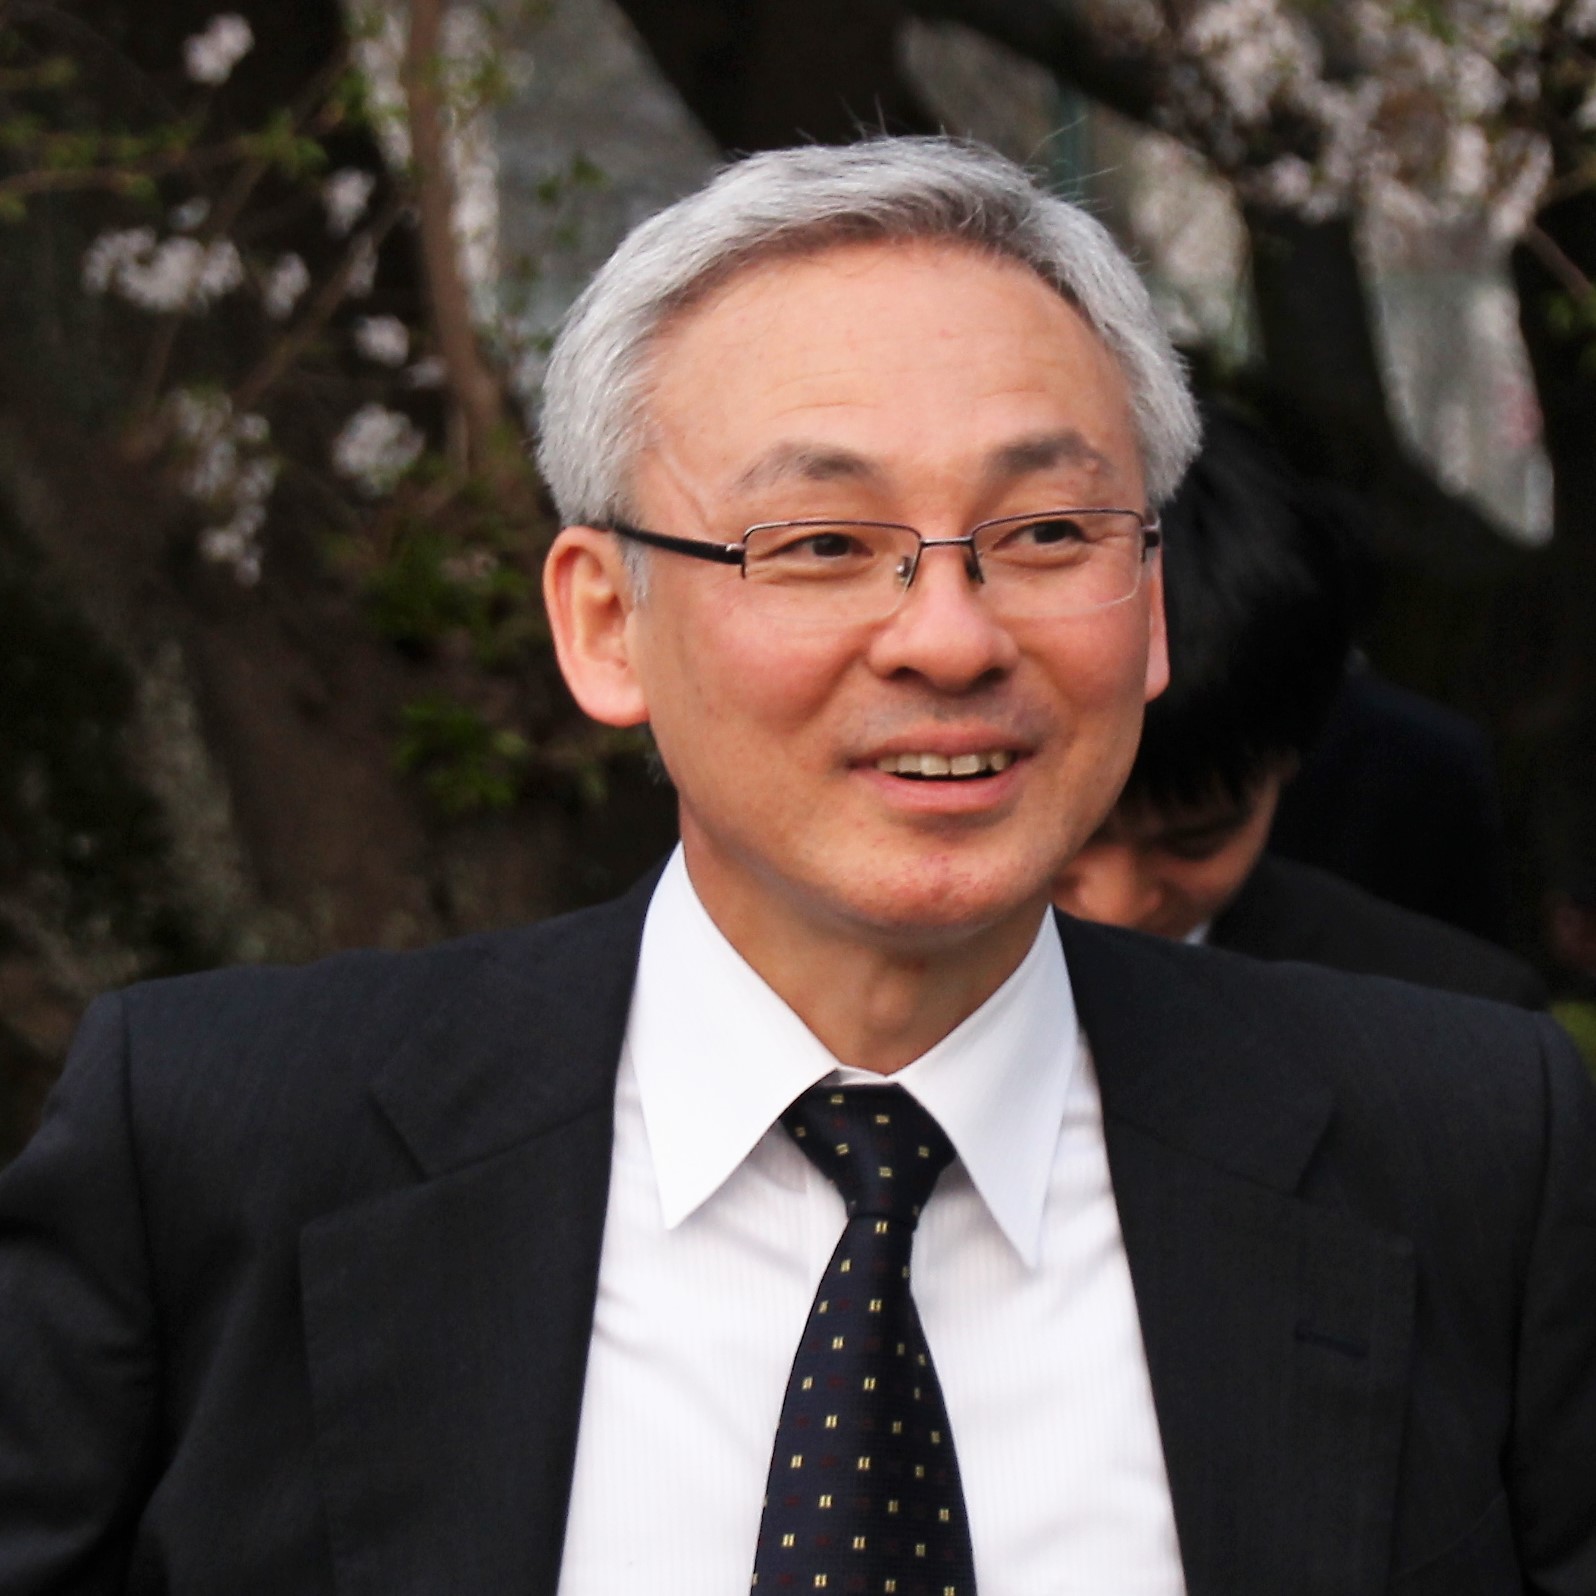 Toshihiko Kuwabara